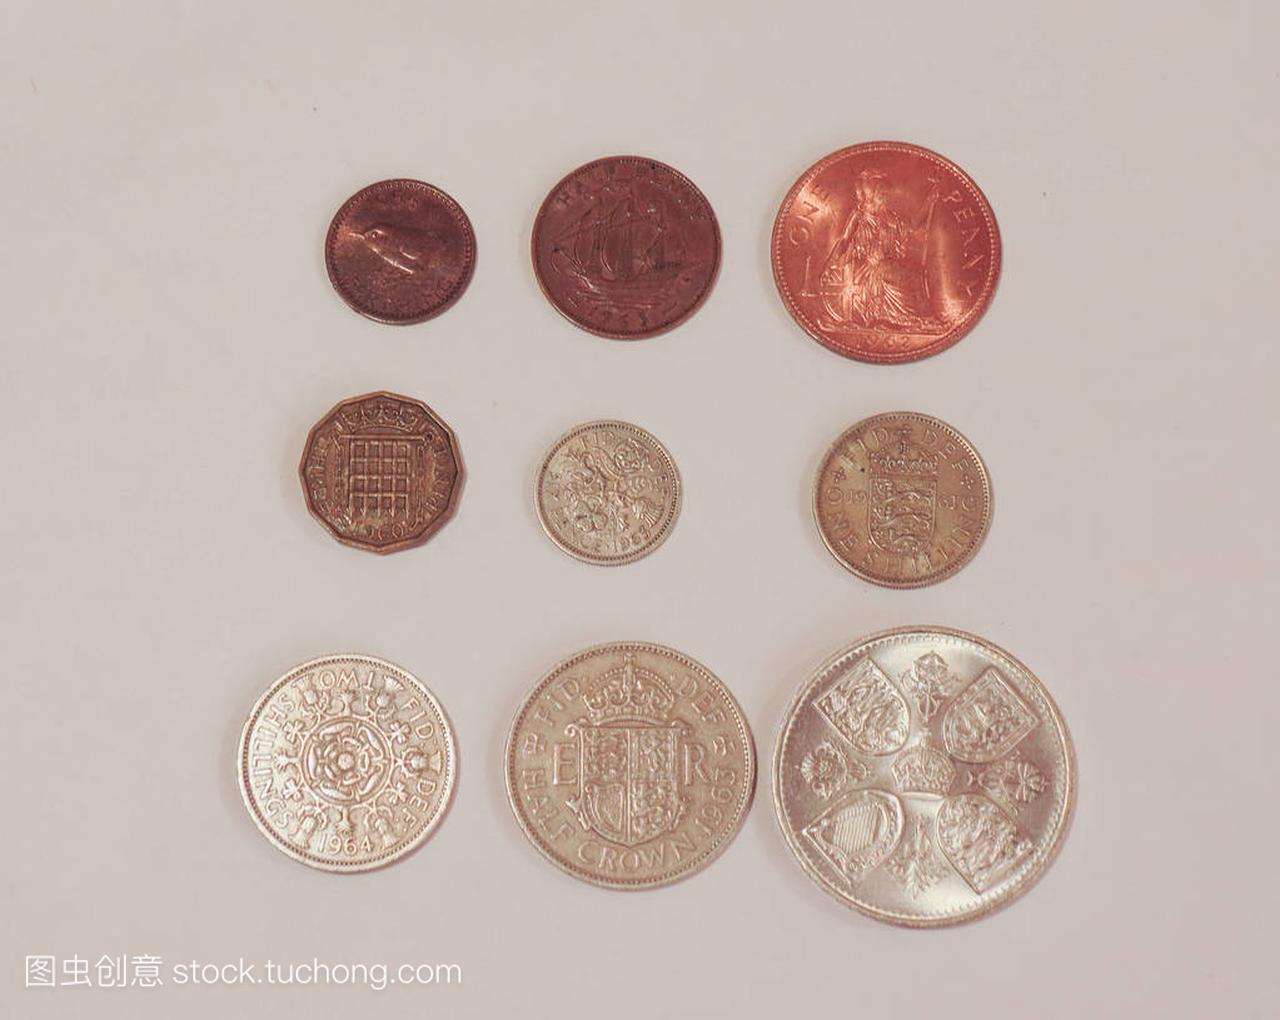 预十进制 Gbp 英镑硬币 (英国货币),在使用之前